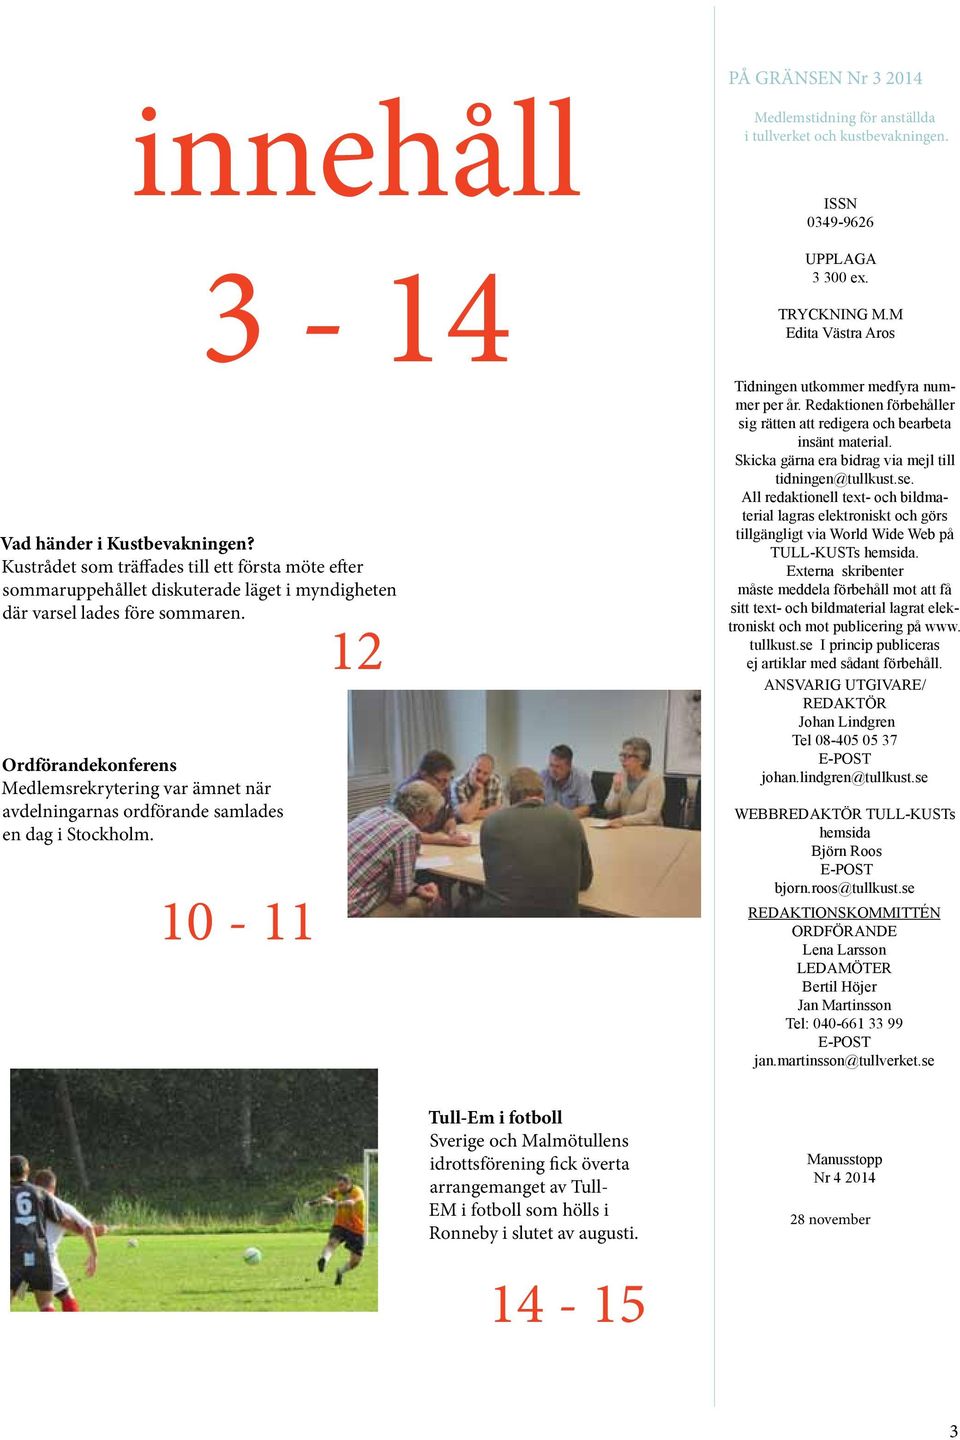 ISSN 0349-9626 UPPLAGA 3 300 ex. TRYCKNING M.M Edita Västra Aros Tidningen utkommer medfyra nummer per år. Redaktionen förbehåller sig rätten att redigera och bearbeta insänt material.